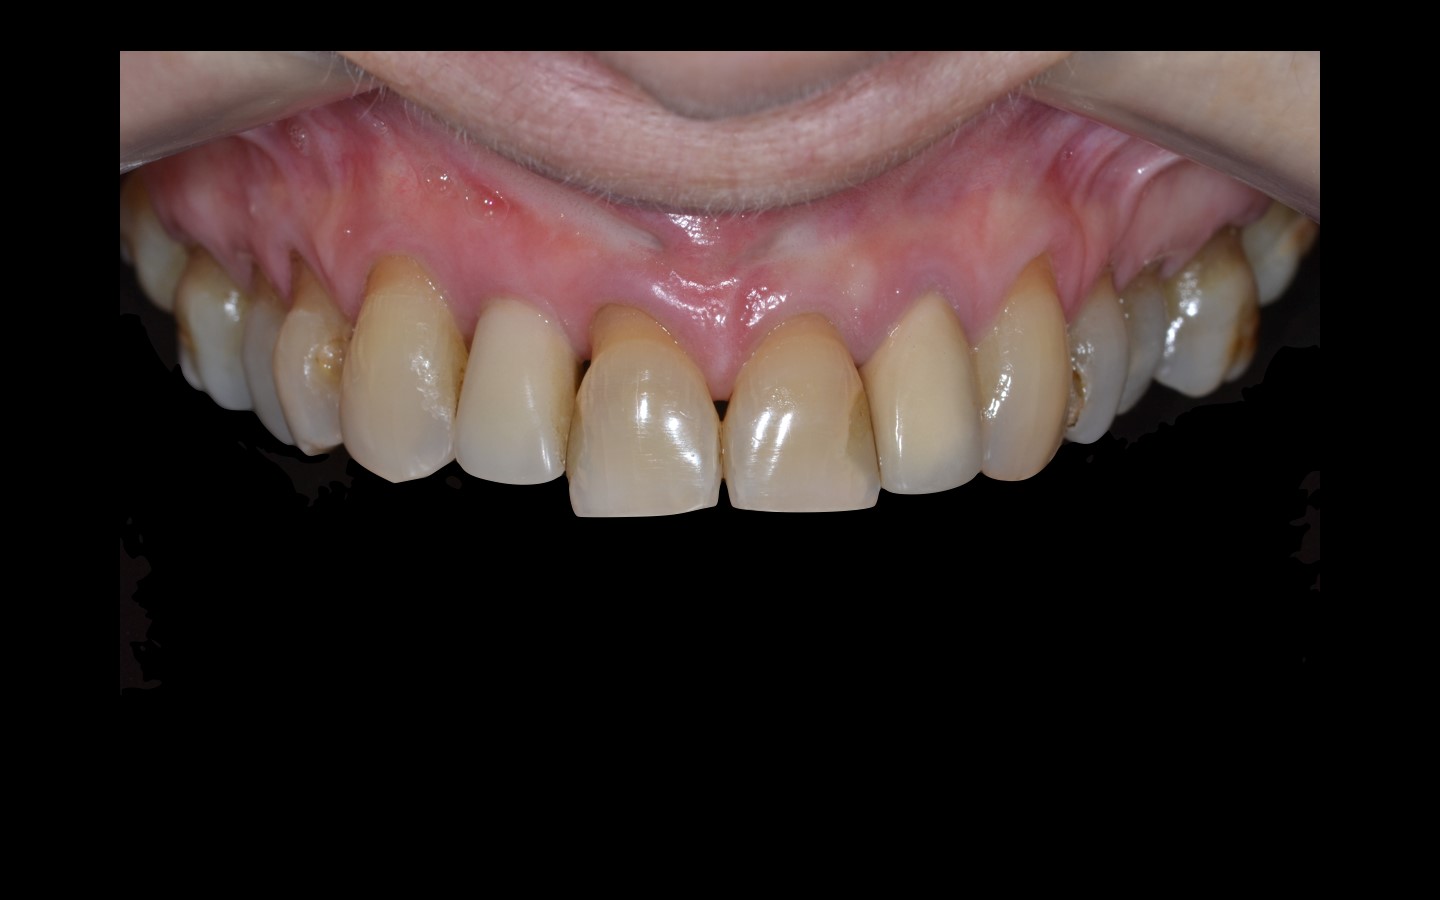 image19 - Reabilitação dento-alveolar com implante Arcsys, enxerto conjuntivo e substituto ósseo Nanosynt